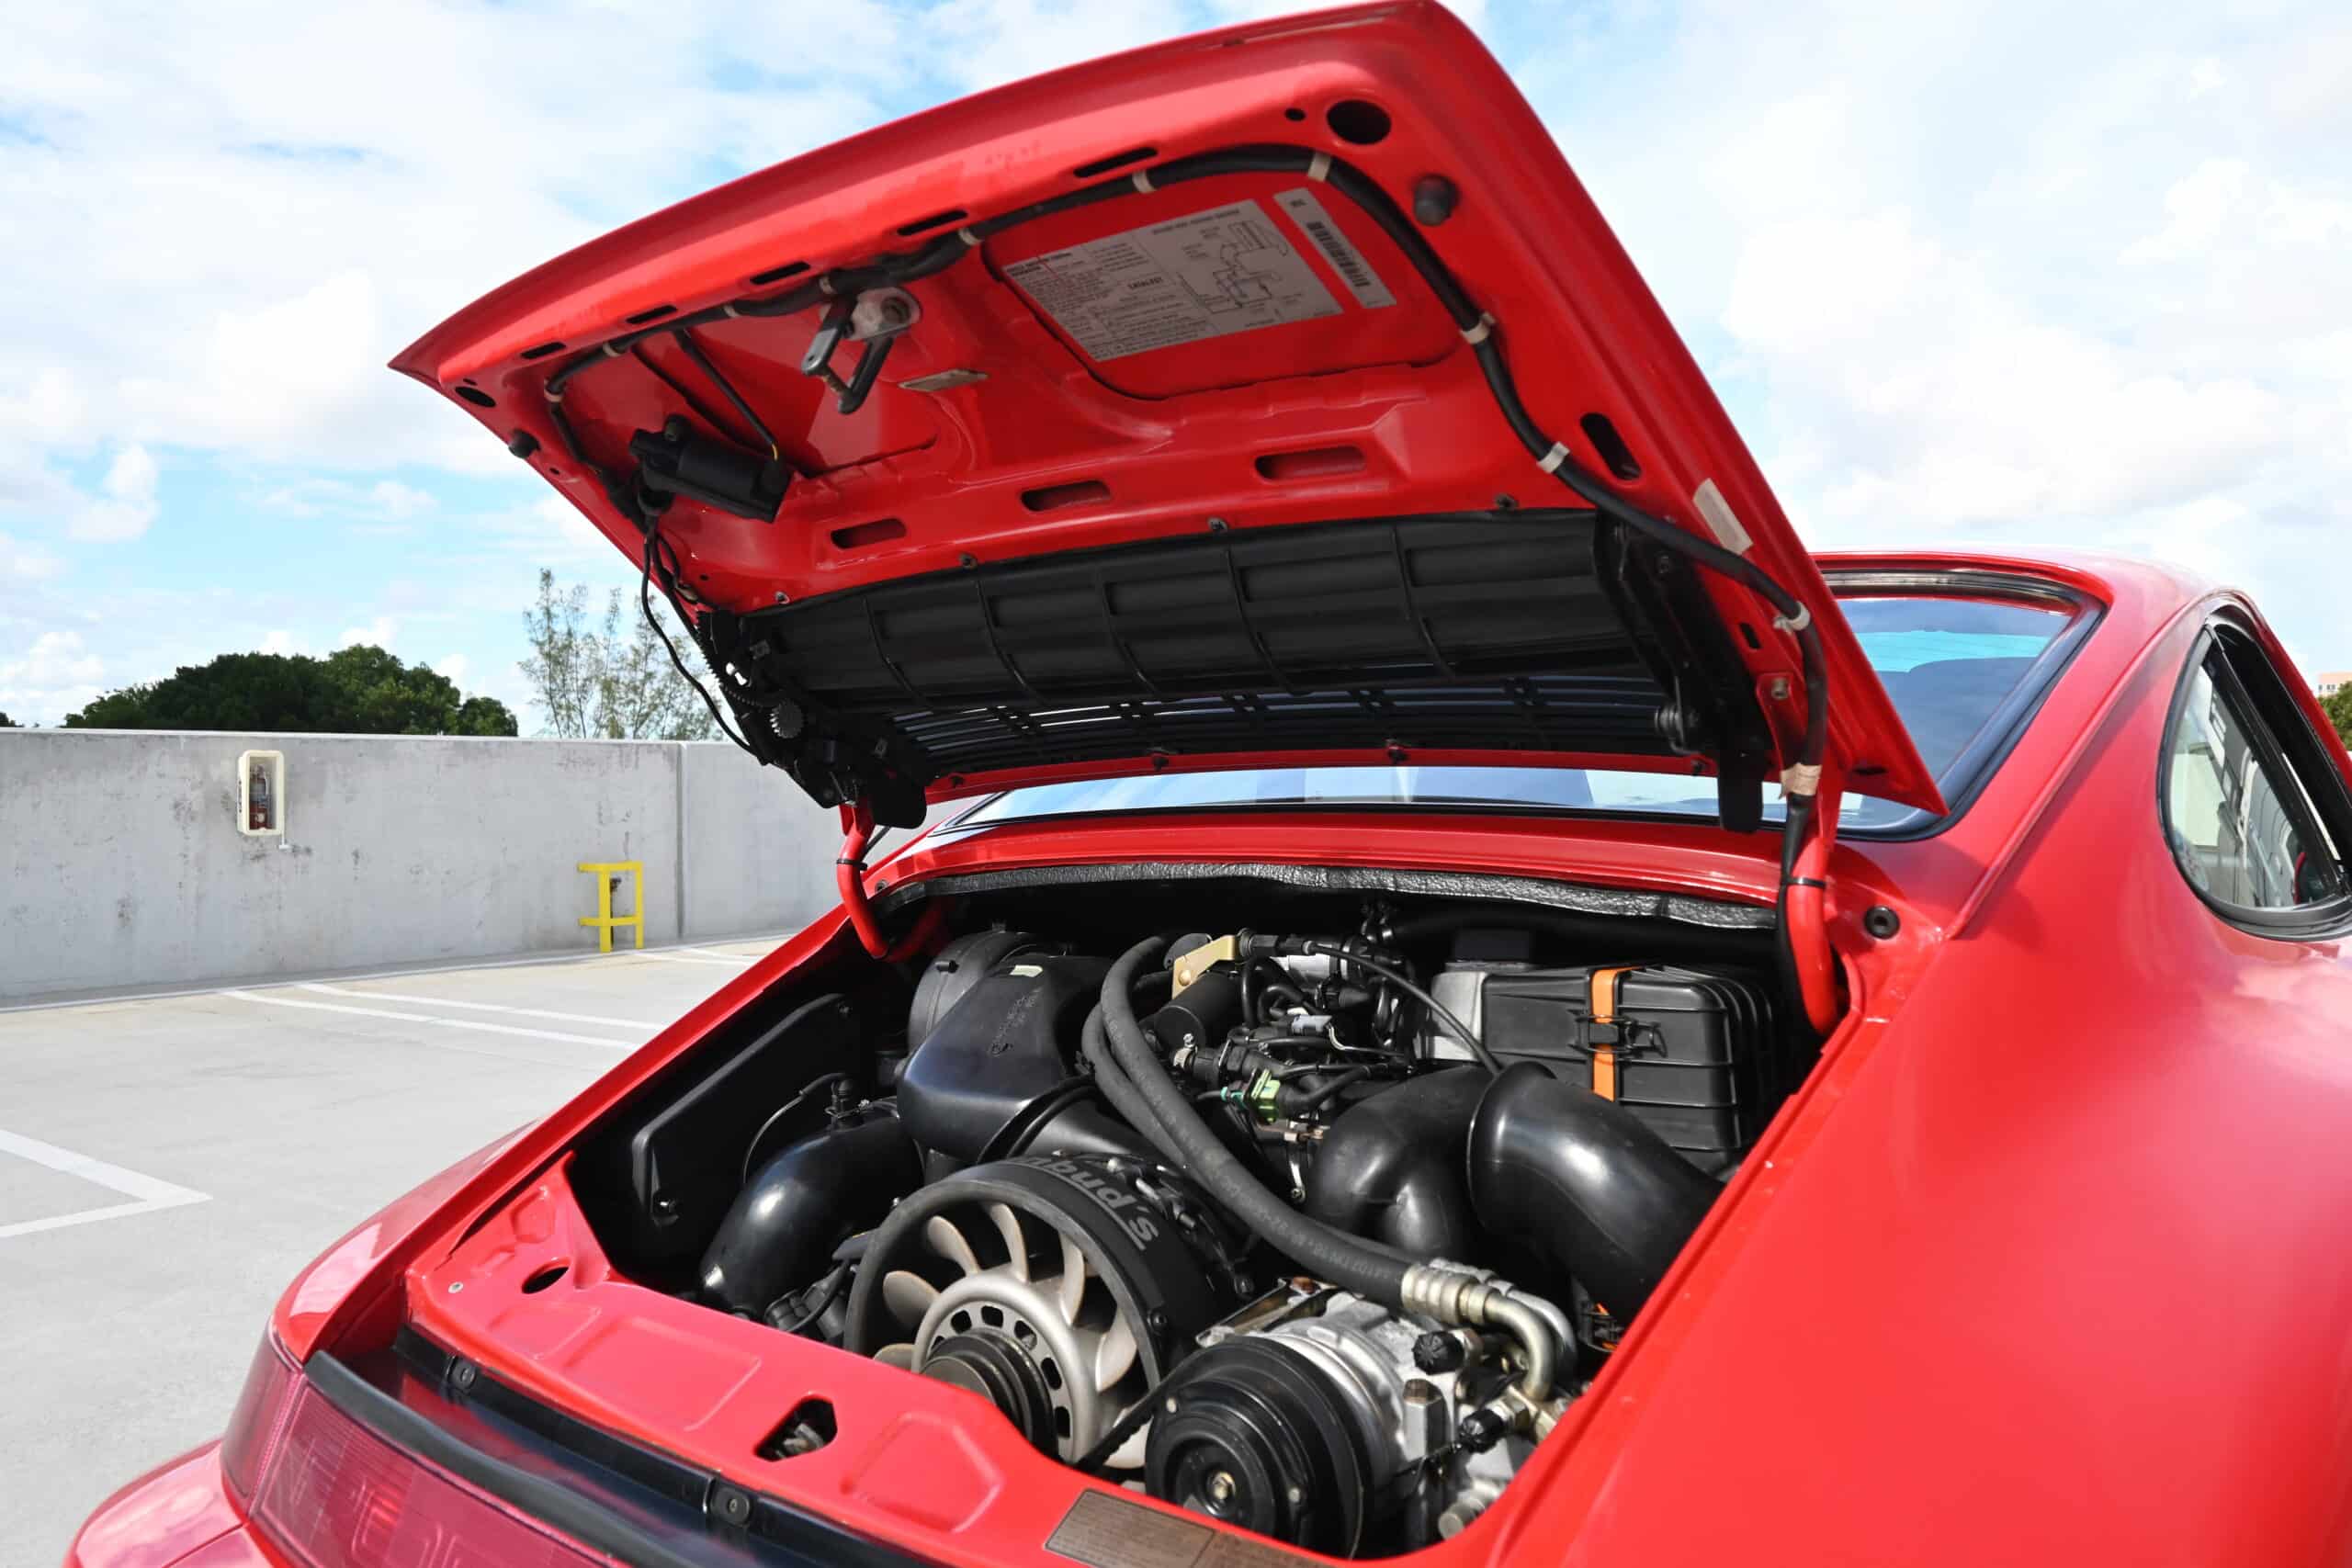 1994 Porsche 911 964 C4 Widebody 1 of 267 Built – Factory Turbo Look – Cup Wheels – Euro Height – Engine Rebuilt